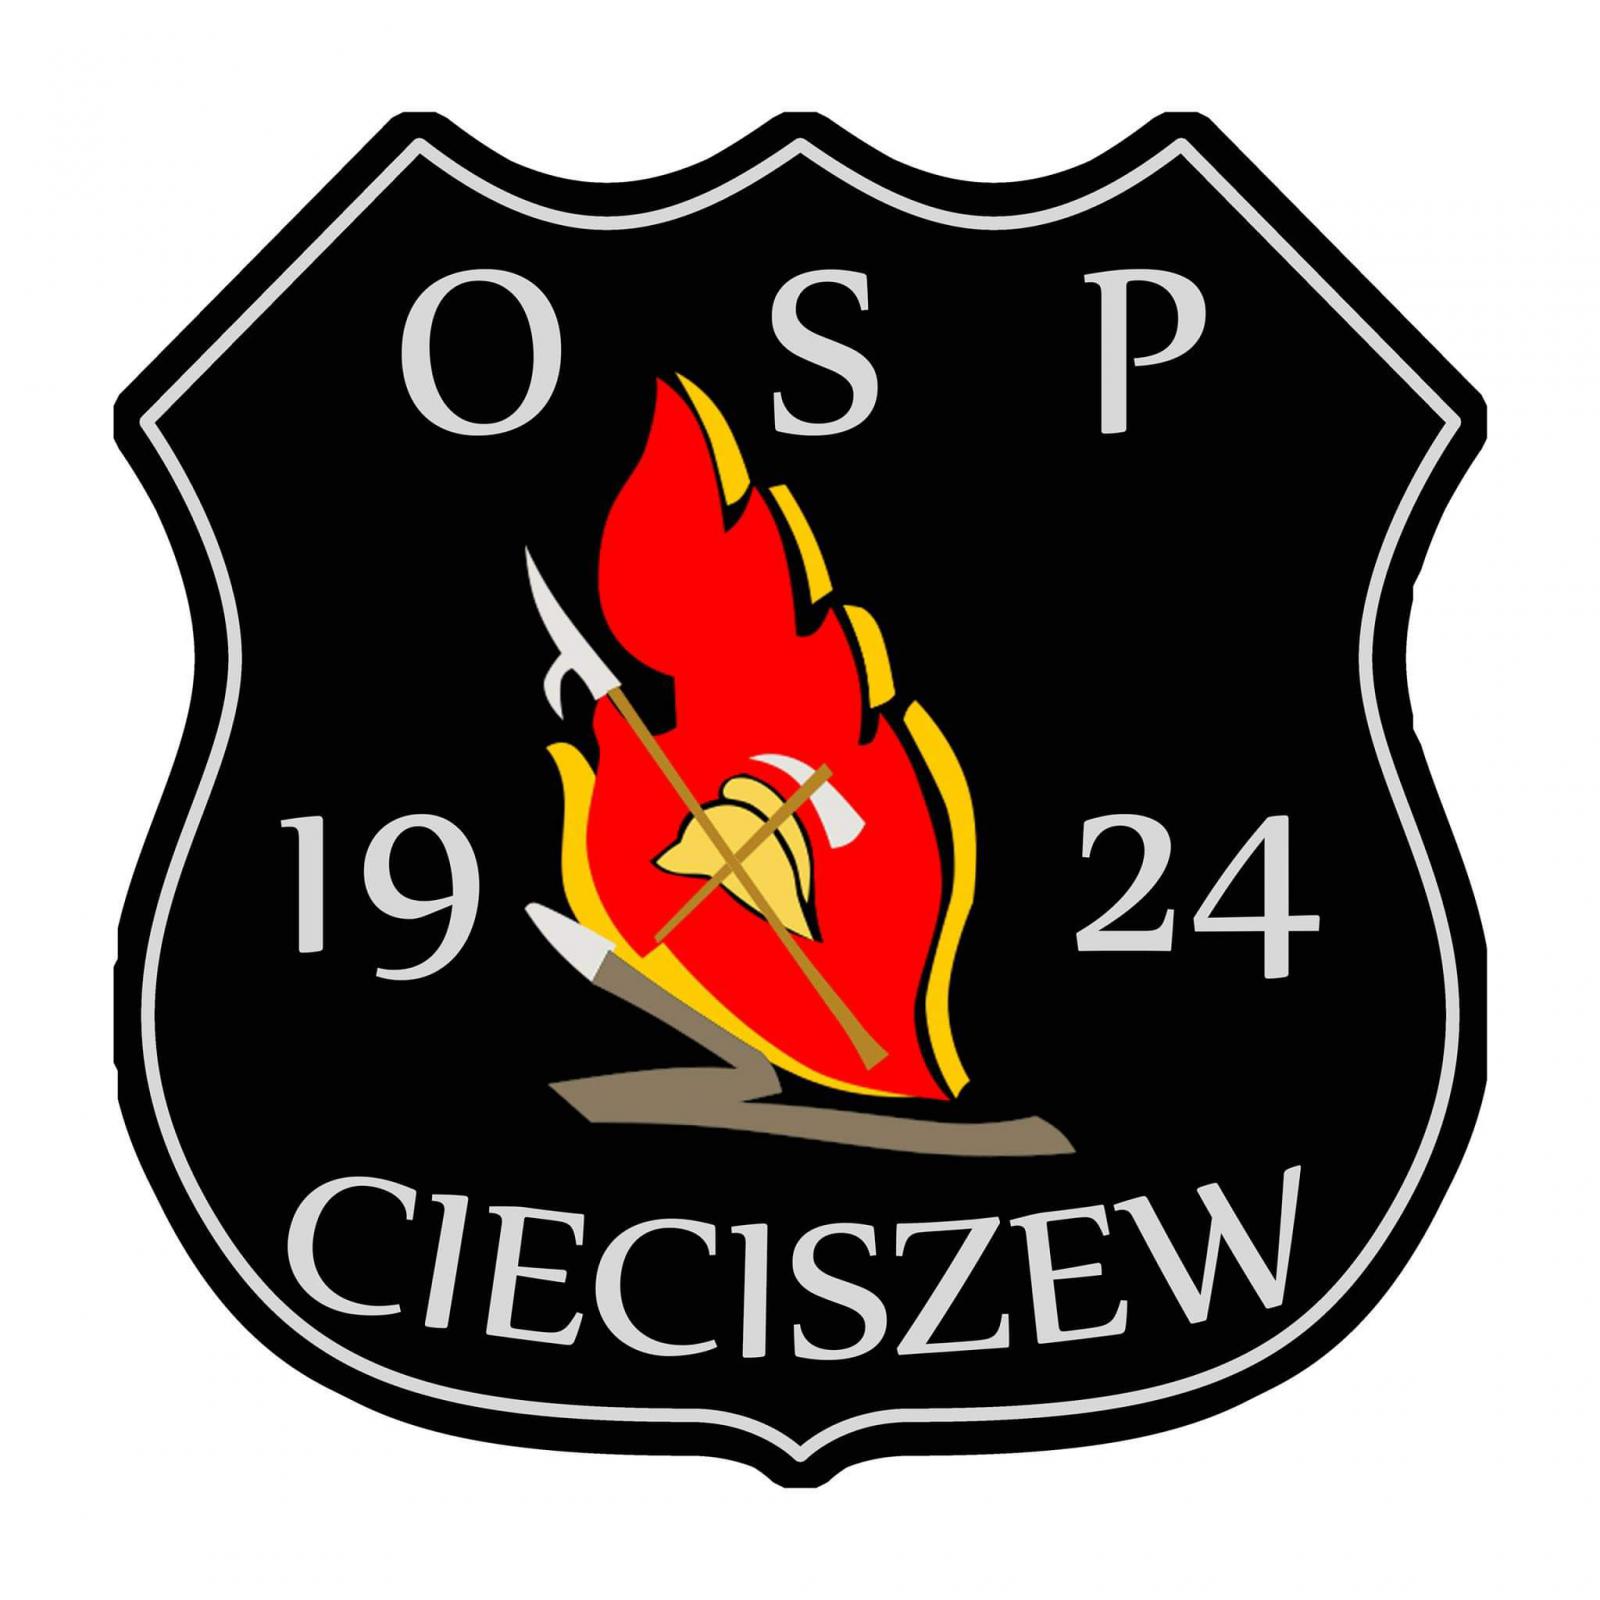 Czarna tarcza herbowa. Na środku czerwony płomień symbolizujący ogień. oddziela on datę 1924. Na płomieniu znajduje się hełm strażacki z toporkiem sikawką i bosakiem. Nad nimi napis OSP, poniżej napis Cieciszew.